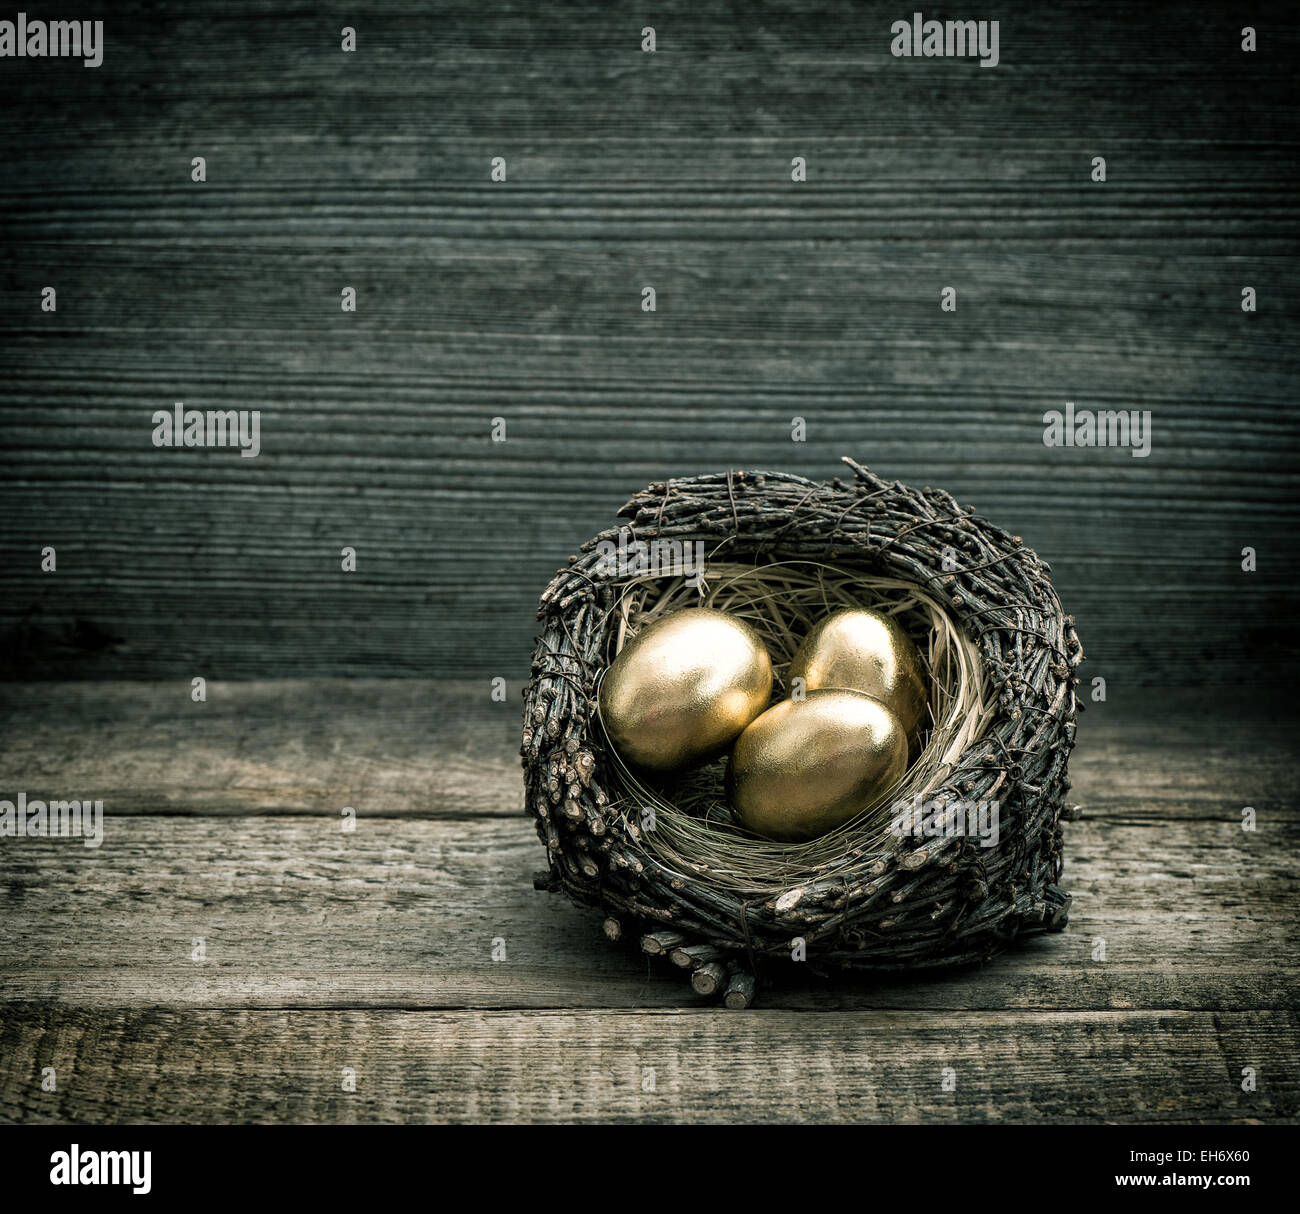 Oeufs de Pâques en nid d'or sur fond de bois rustique. Retro style tonique photo Banque D'Images